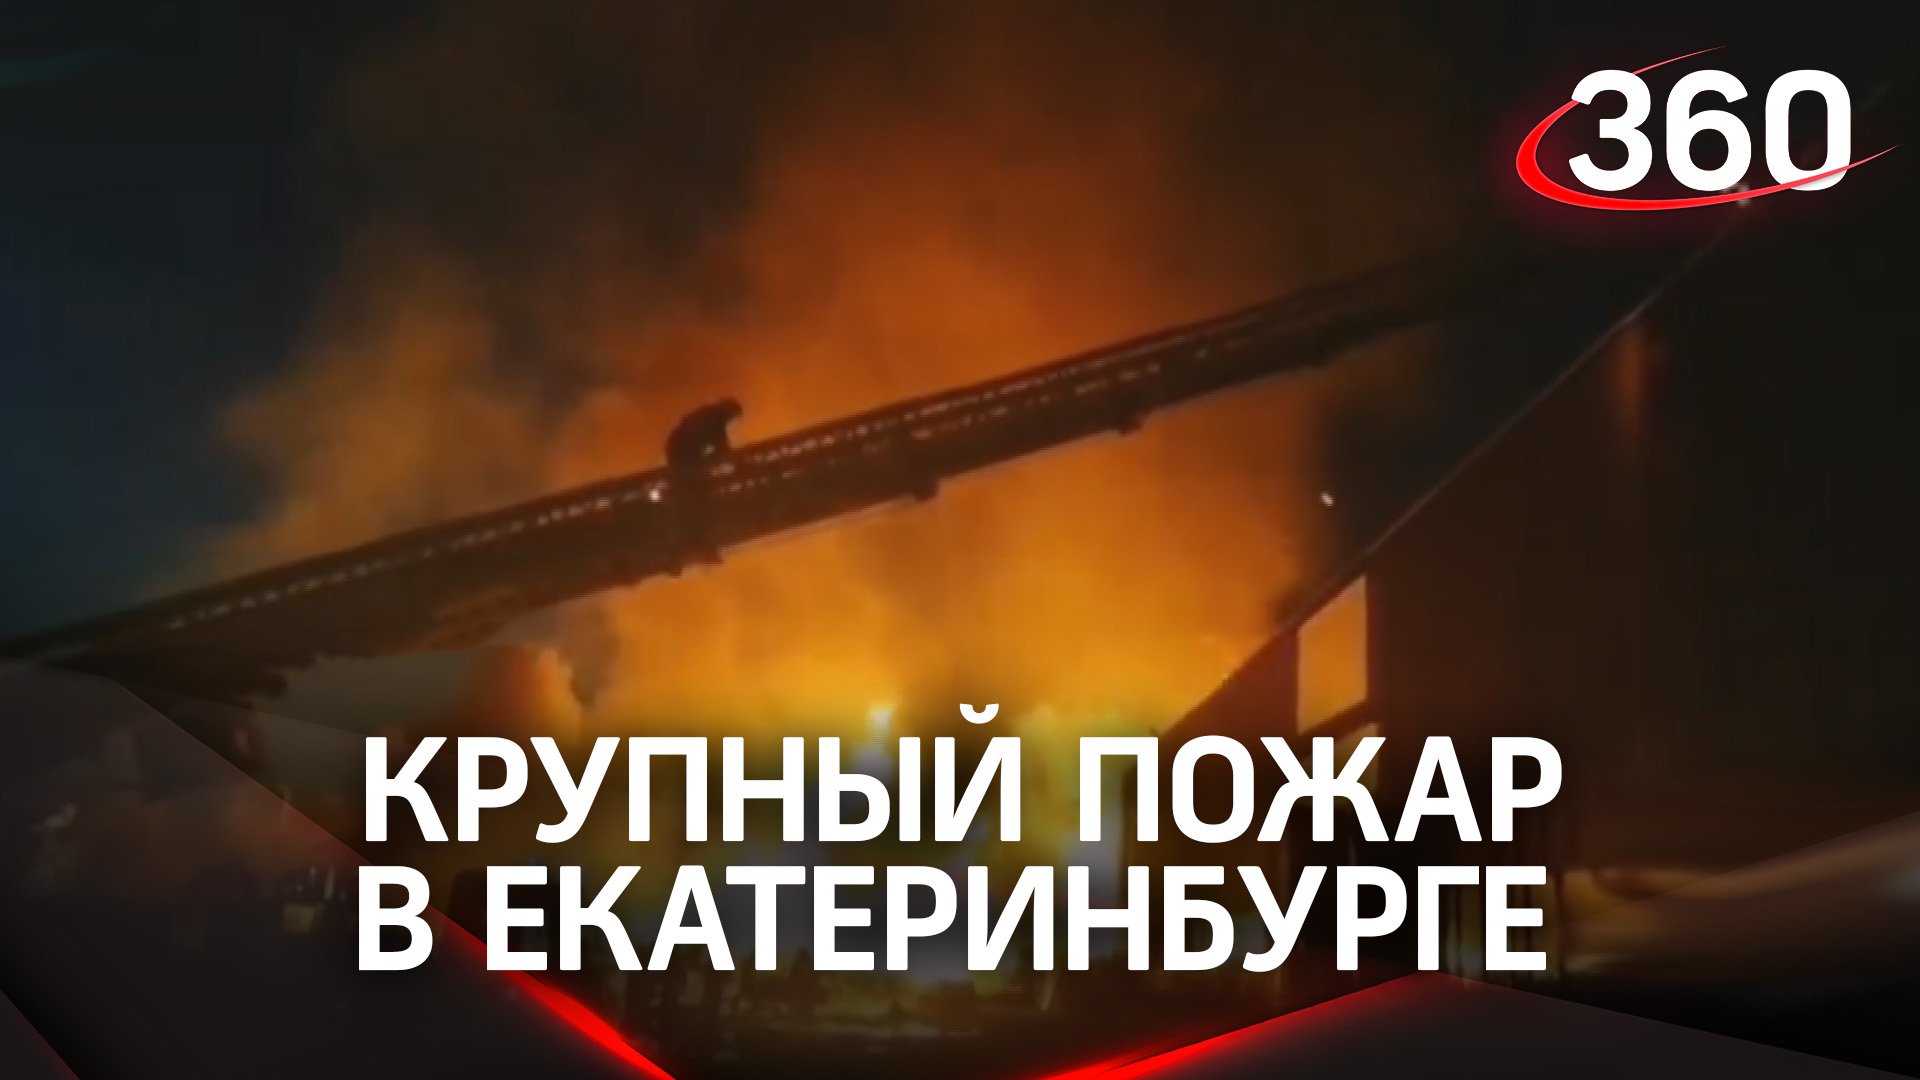 Мощный пожар в промзоне Екатеринбурга. Была угроза взрывов газовых баллонов. Видео